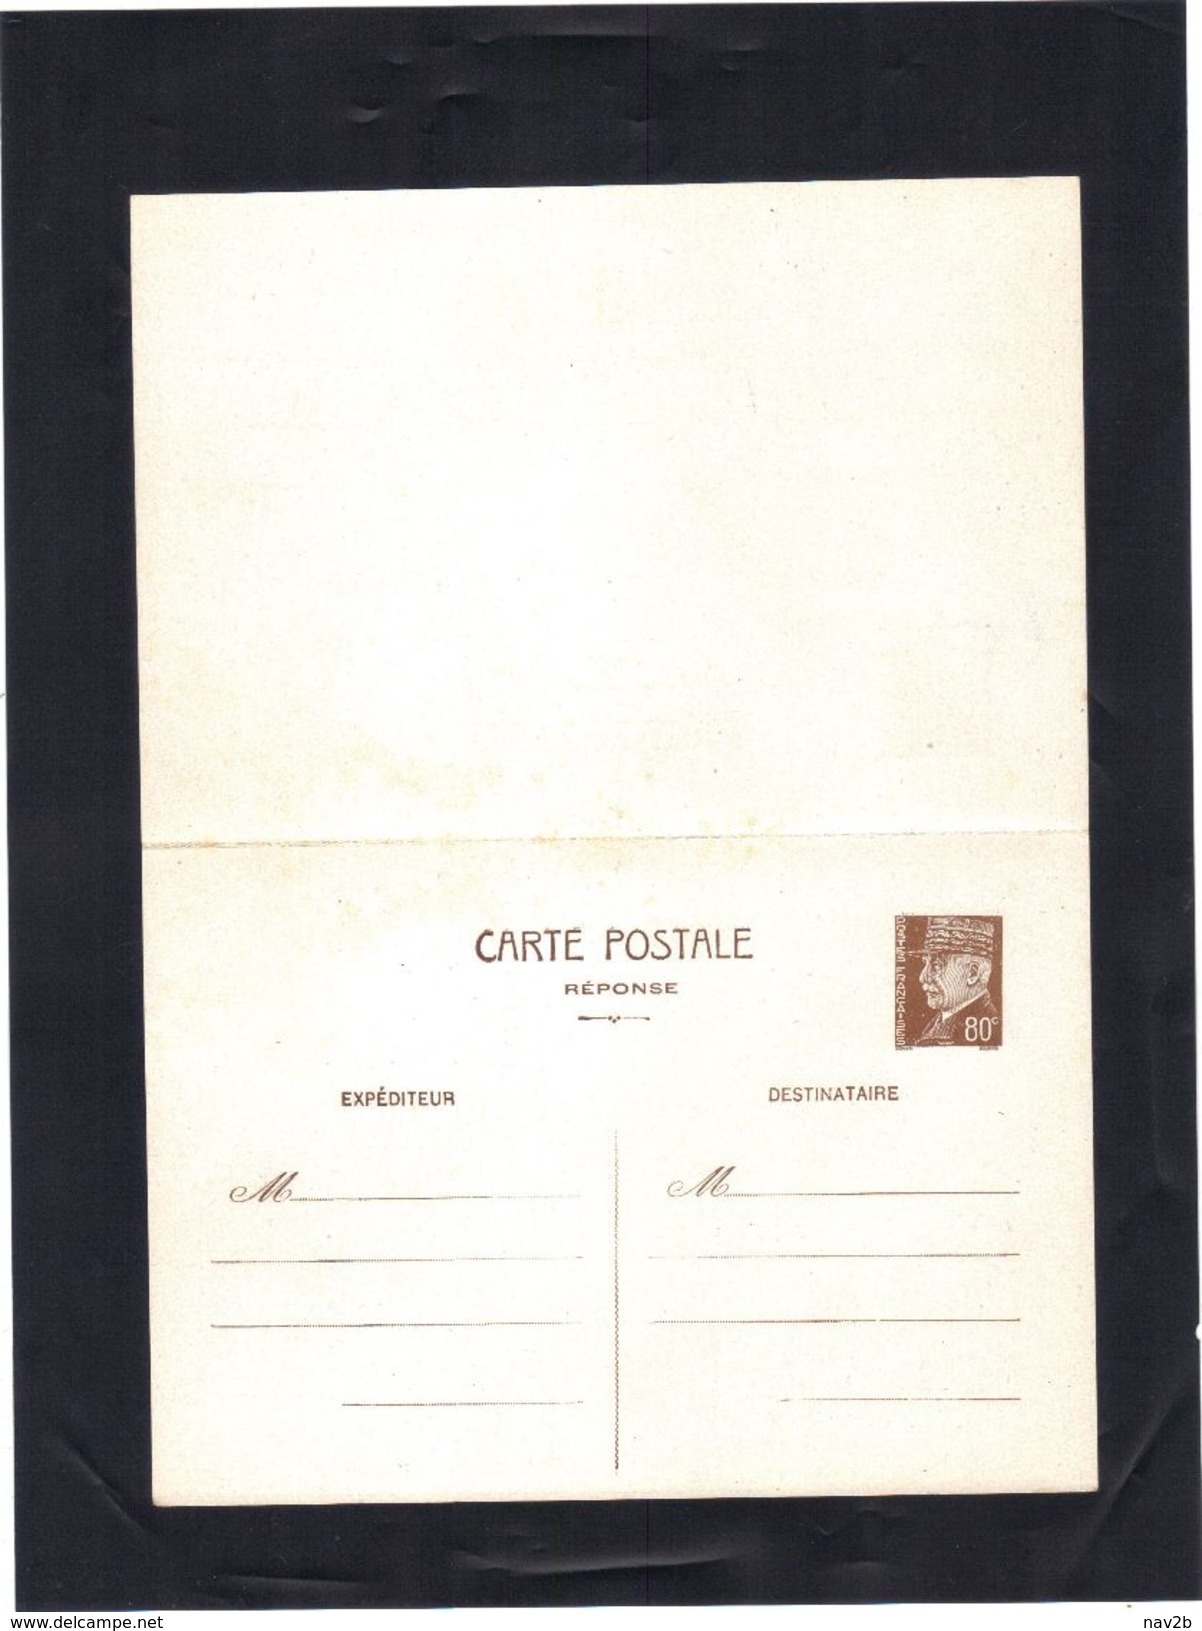 Entier Carte Postale Pétain 80 Cts .  REPONSE  PAYEE .  Neuve . - Standaardpostkaarten En TSC (Voor 1995)